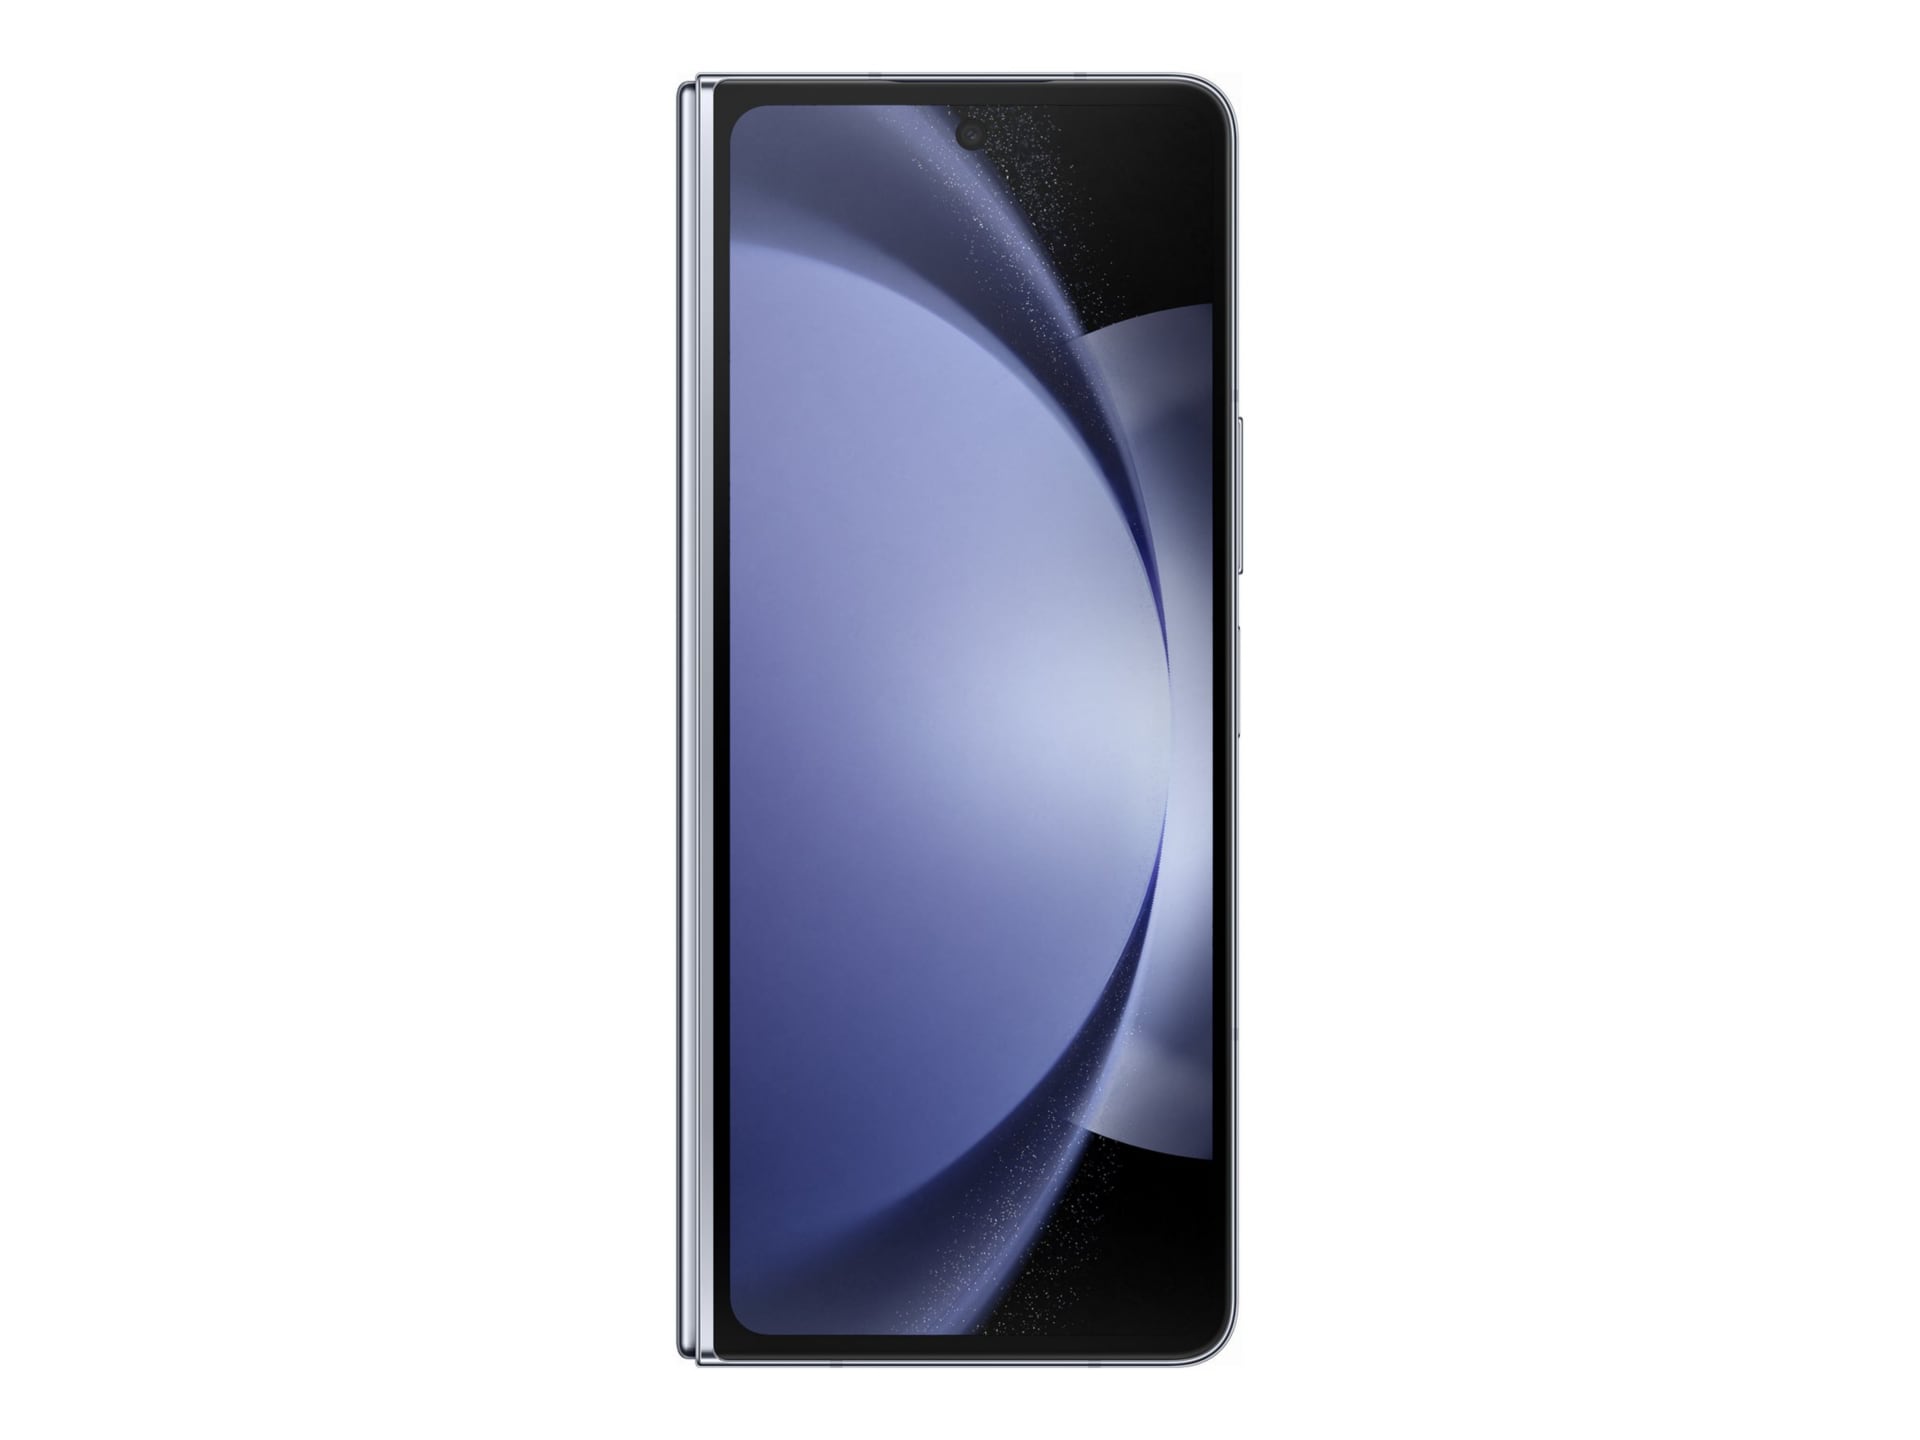 Samsung Galaxy Z Fold5 - icy blue - 5G smartphone - 512 GB - GSM